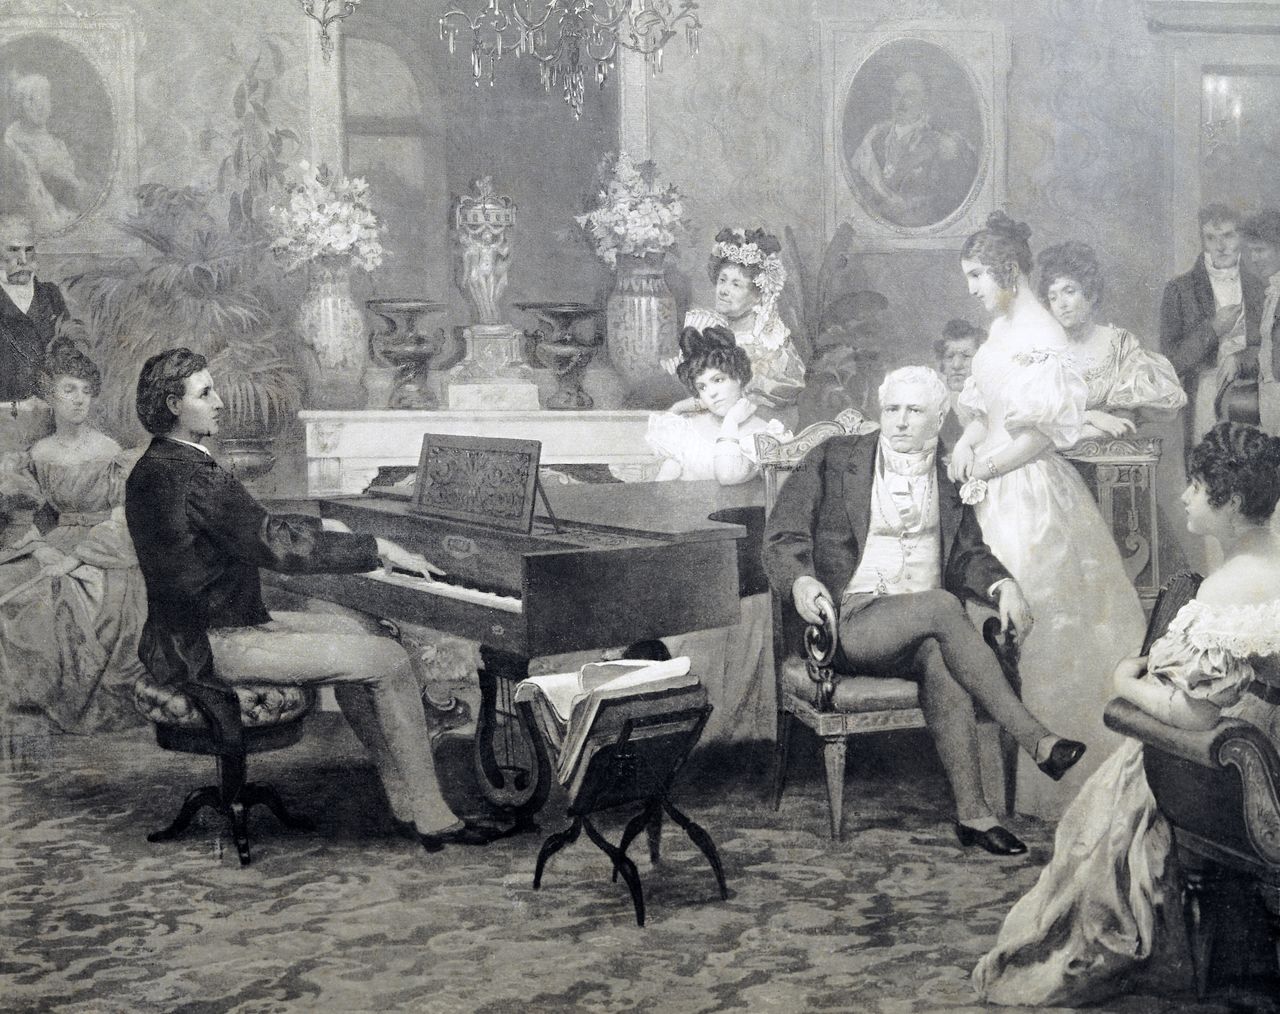 شوبان يعزف على البيانو في صالون الأمير أنتوني رادزيويل (1775–1833). ملكية متحف فريدريك شوبان. (دياغوستيني/غيتي إميجيز)